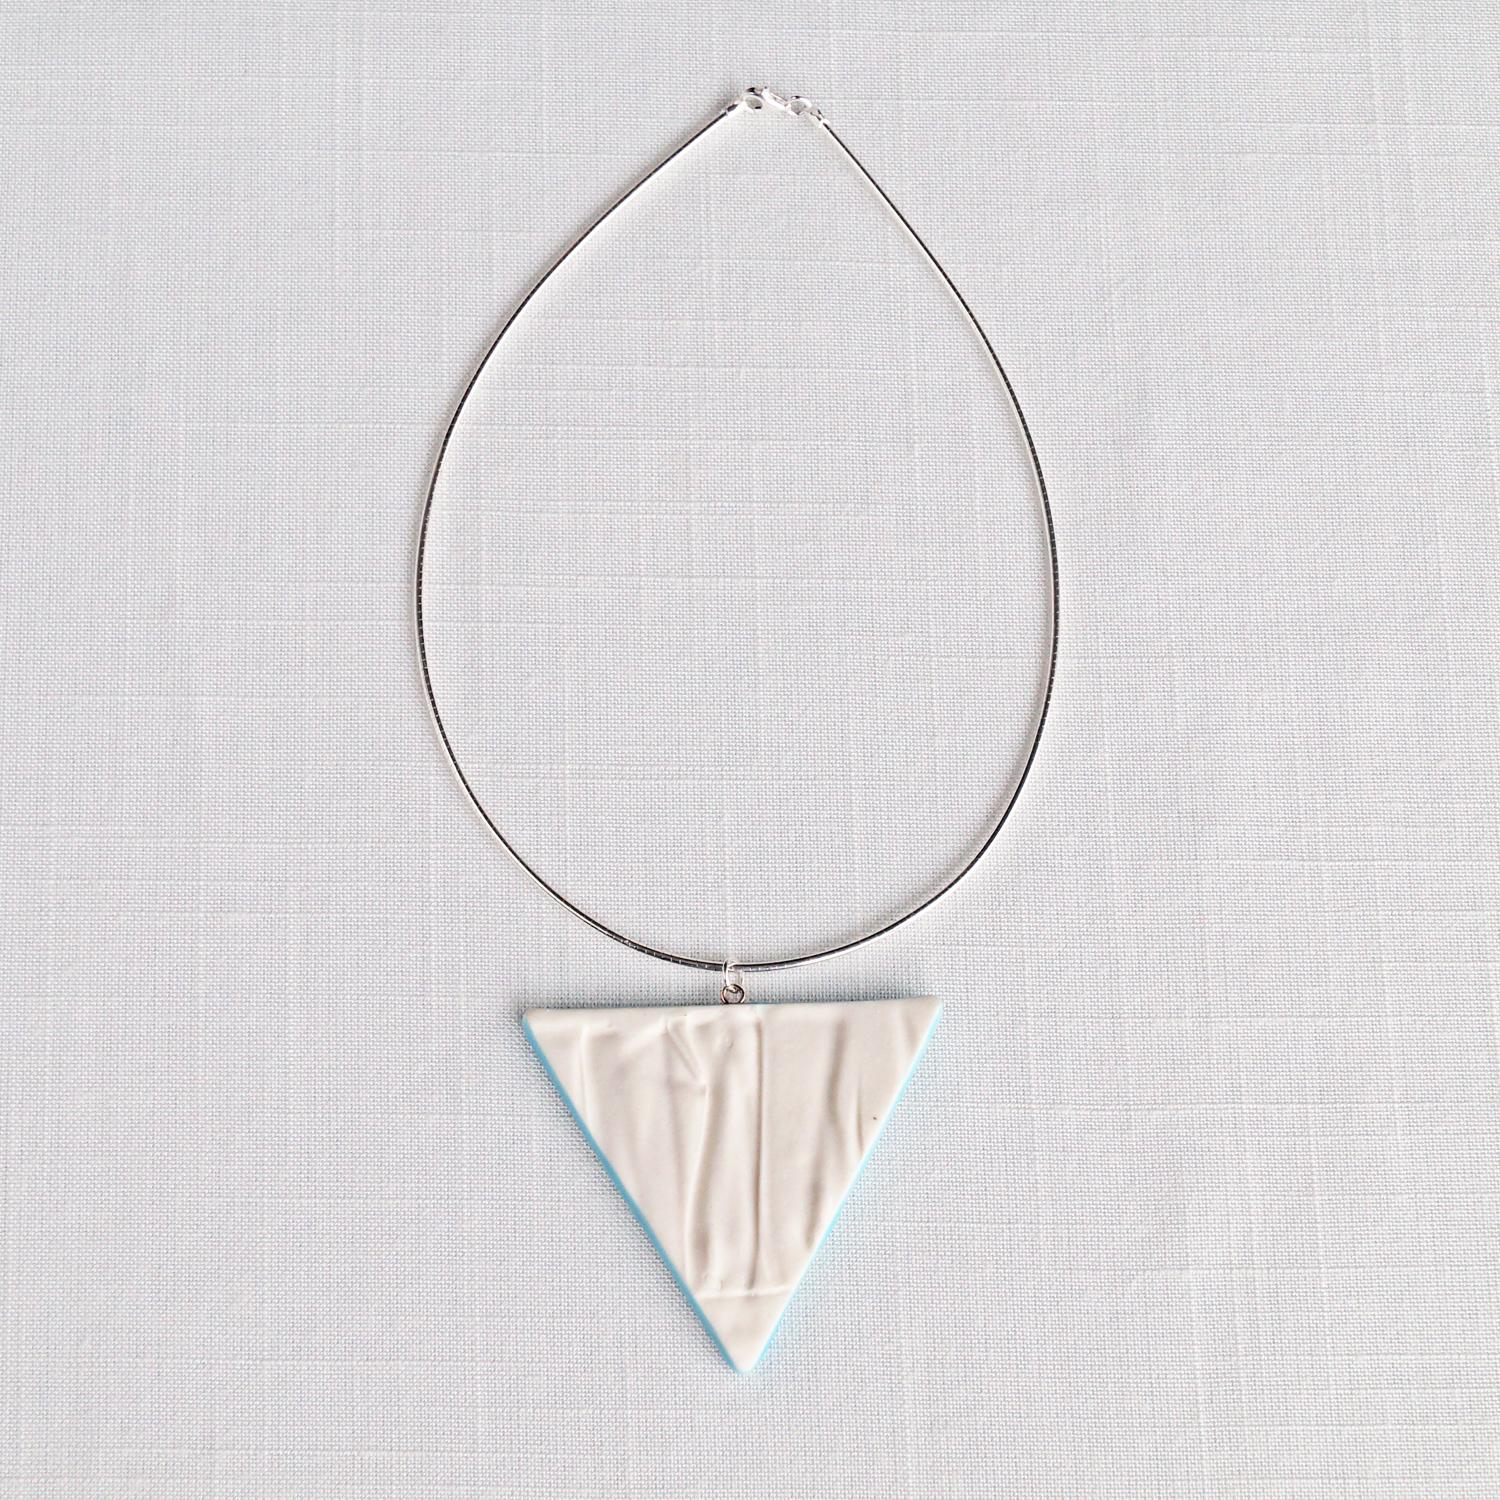 RUCHED triangle necklace, white porcelain, cerulean, choose omega necklet